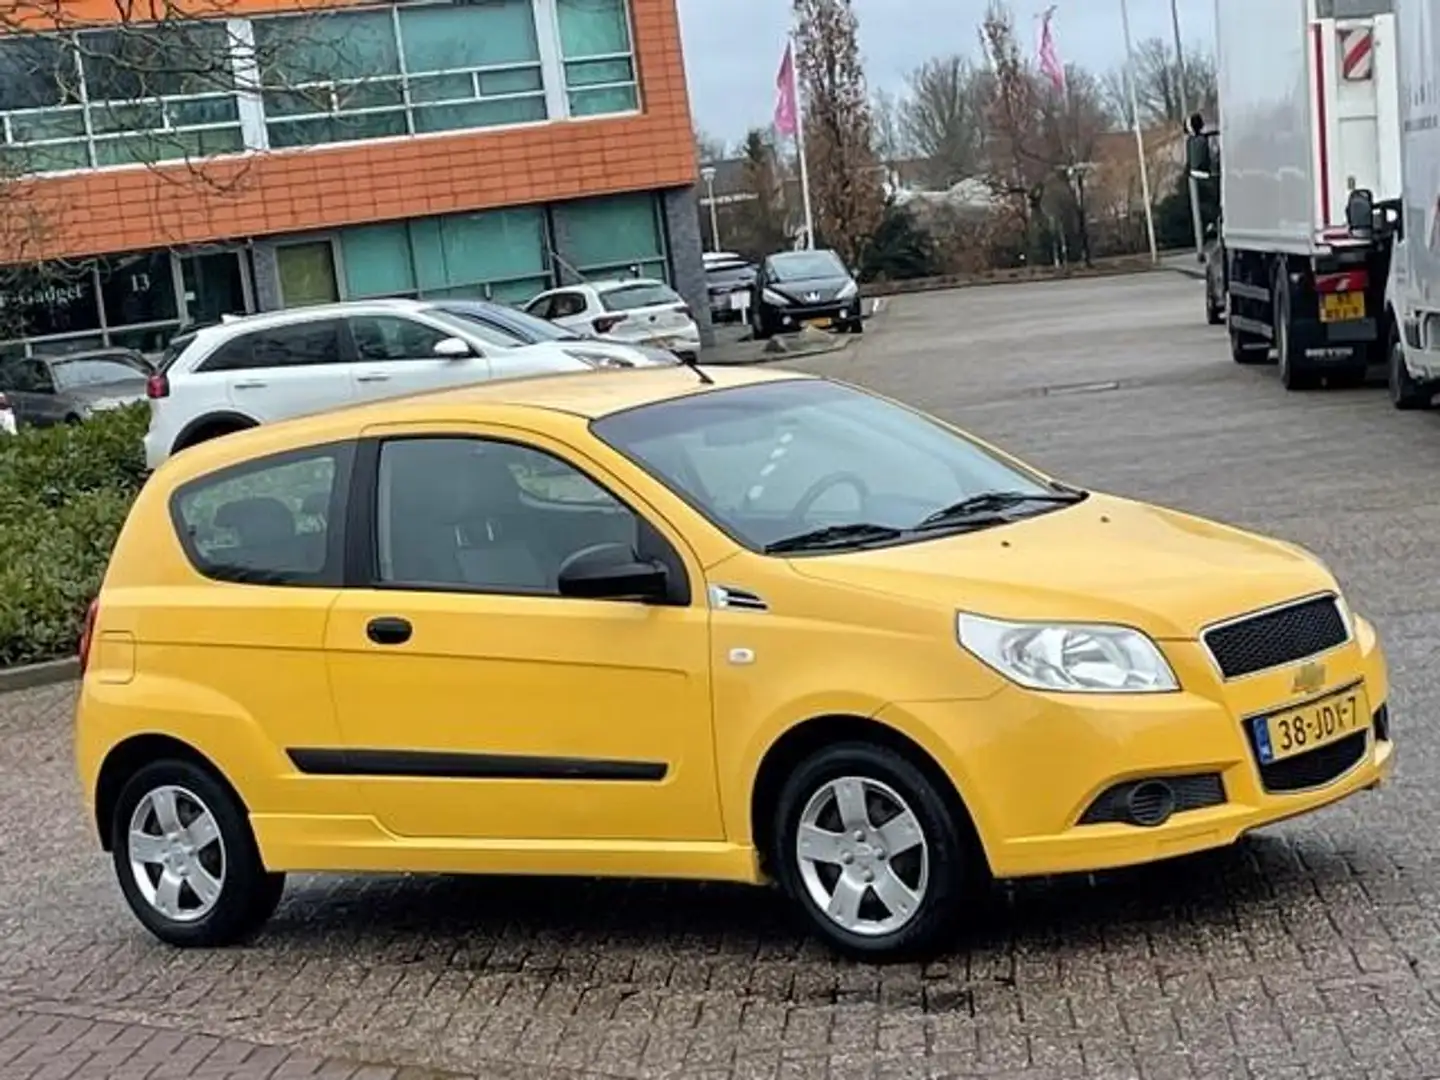 Chevrolet Aveo 1.2 16V L,bj.2009, kleur:geel,APK tot 02/2025 en N Sarı - 2